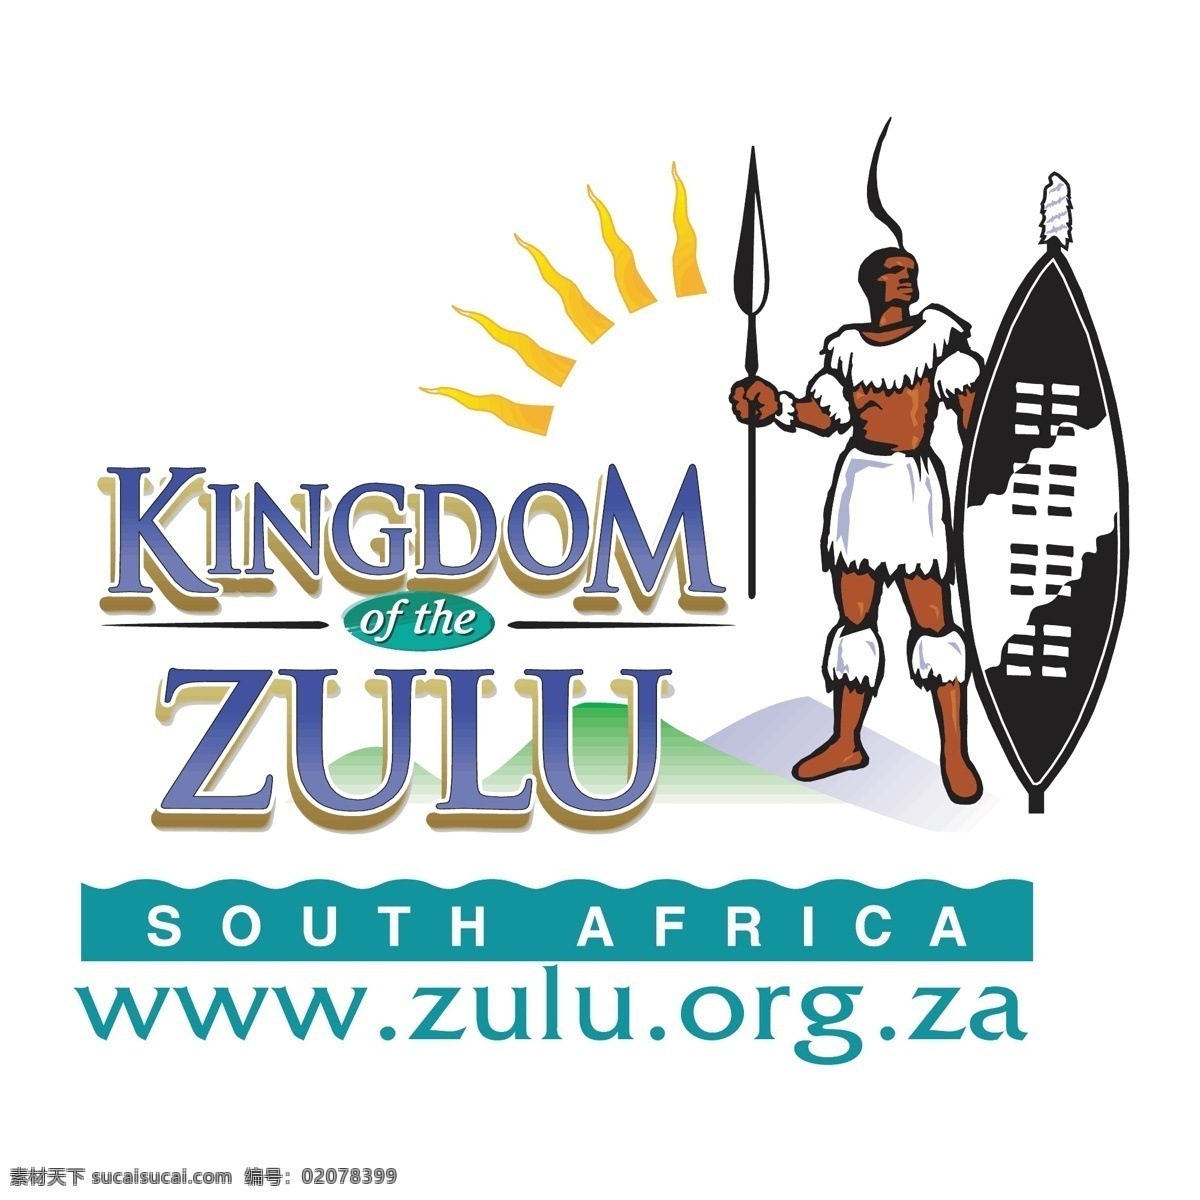 祖鲁王国的 祖鲁王国 王国 祖鲁 矢量 自由王国 图像 向量 向量的王国 王国设计 svg 白色